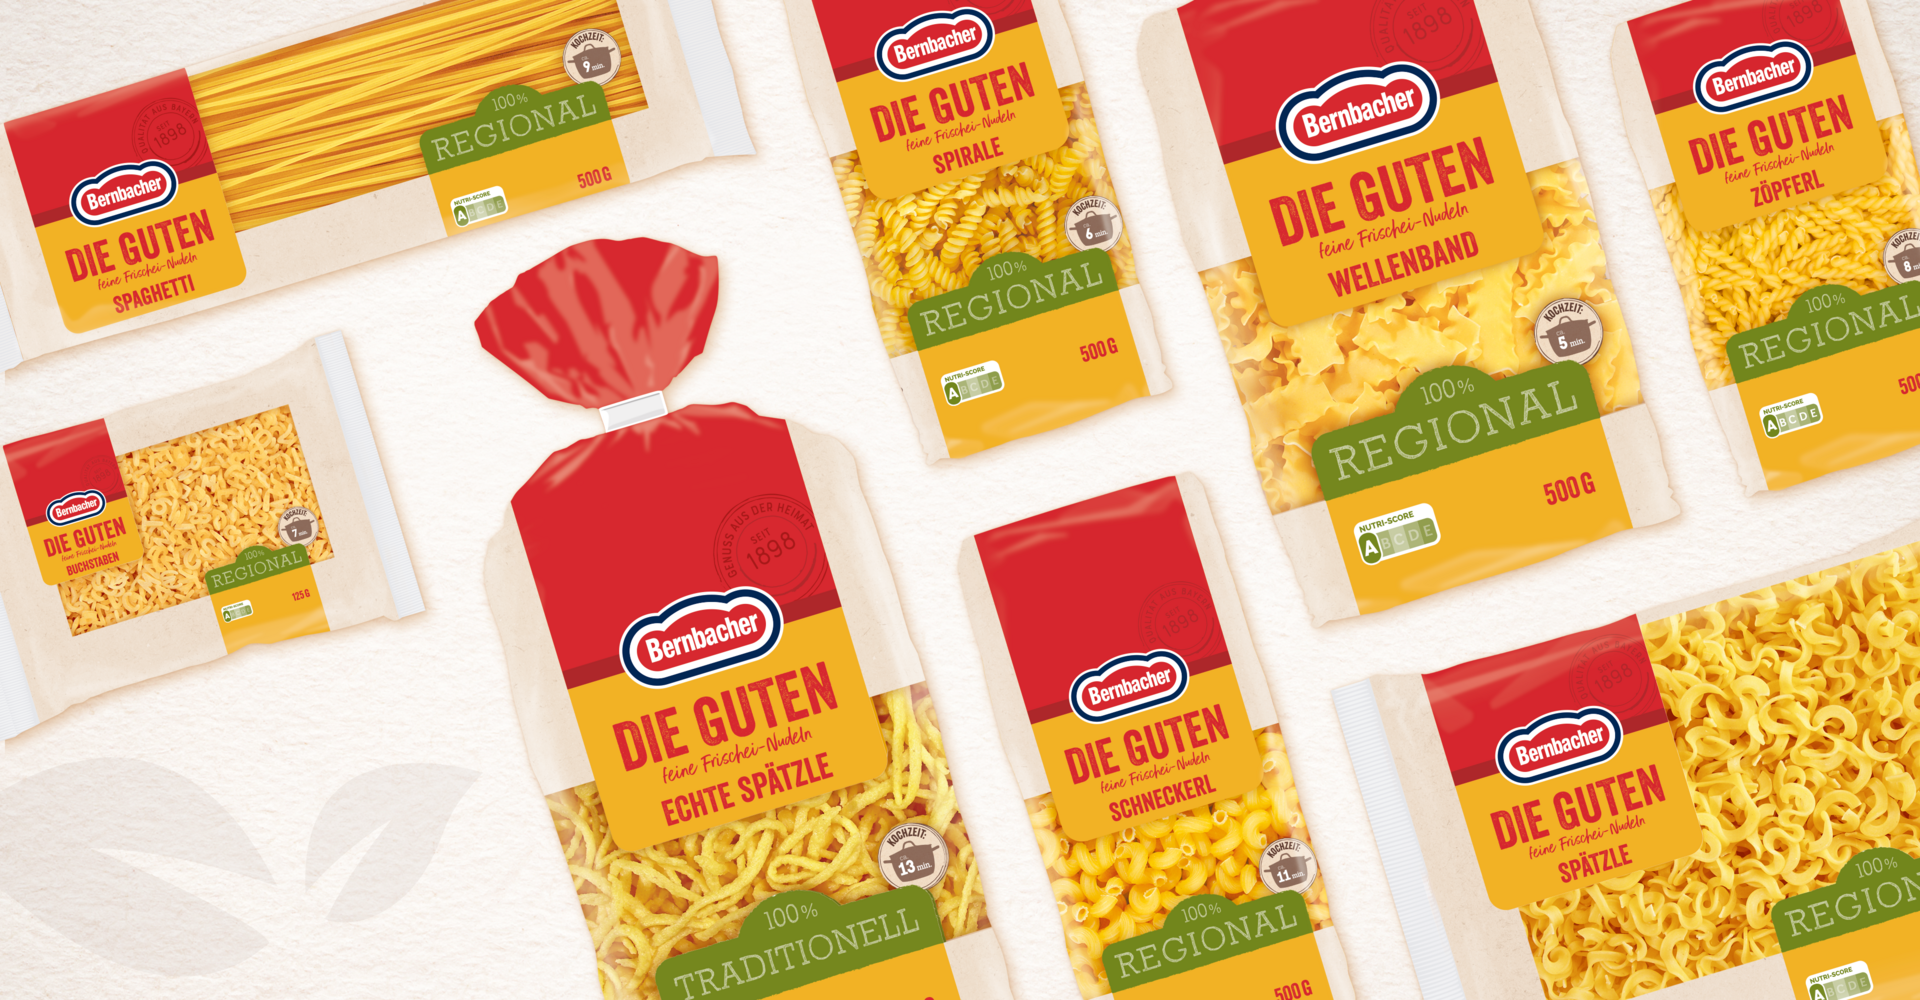 Bernbacher Die Guten und Bella Pasta Launch Grafikdesign Verpackungsdesign Logodesign Branding-Strategie Line Extension